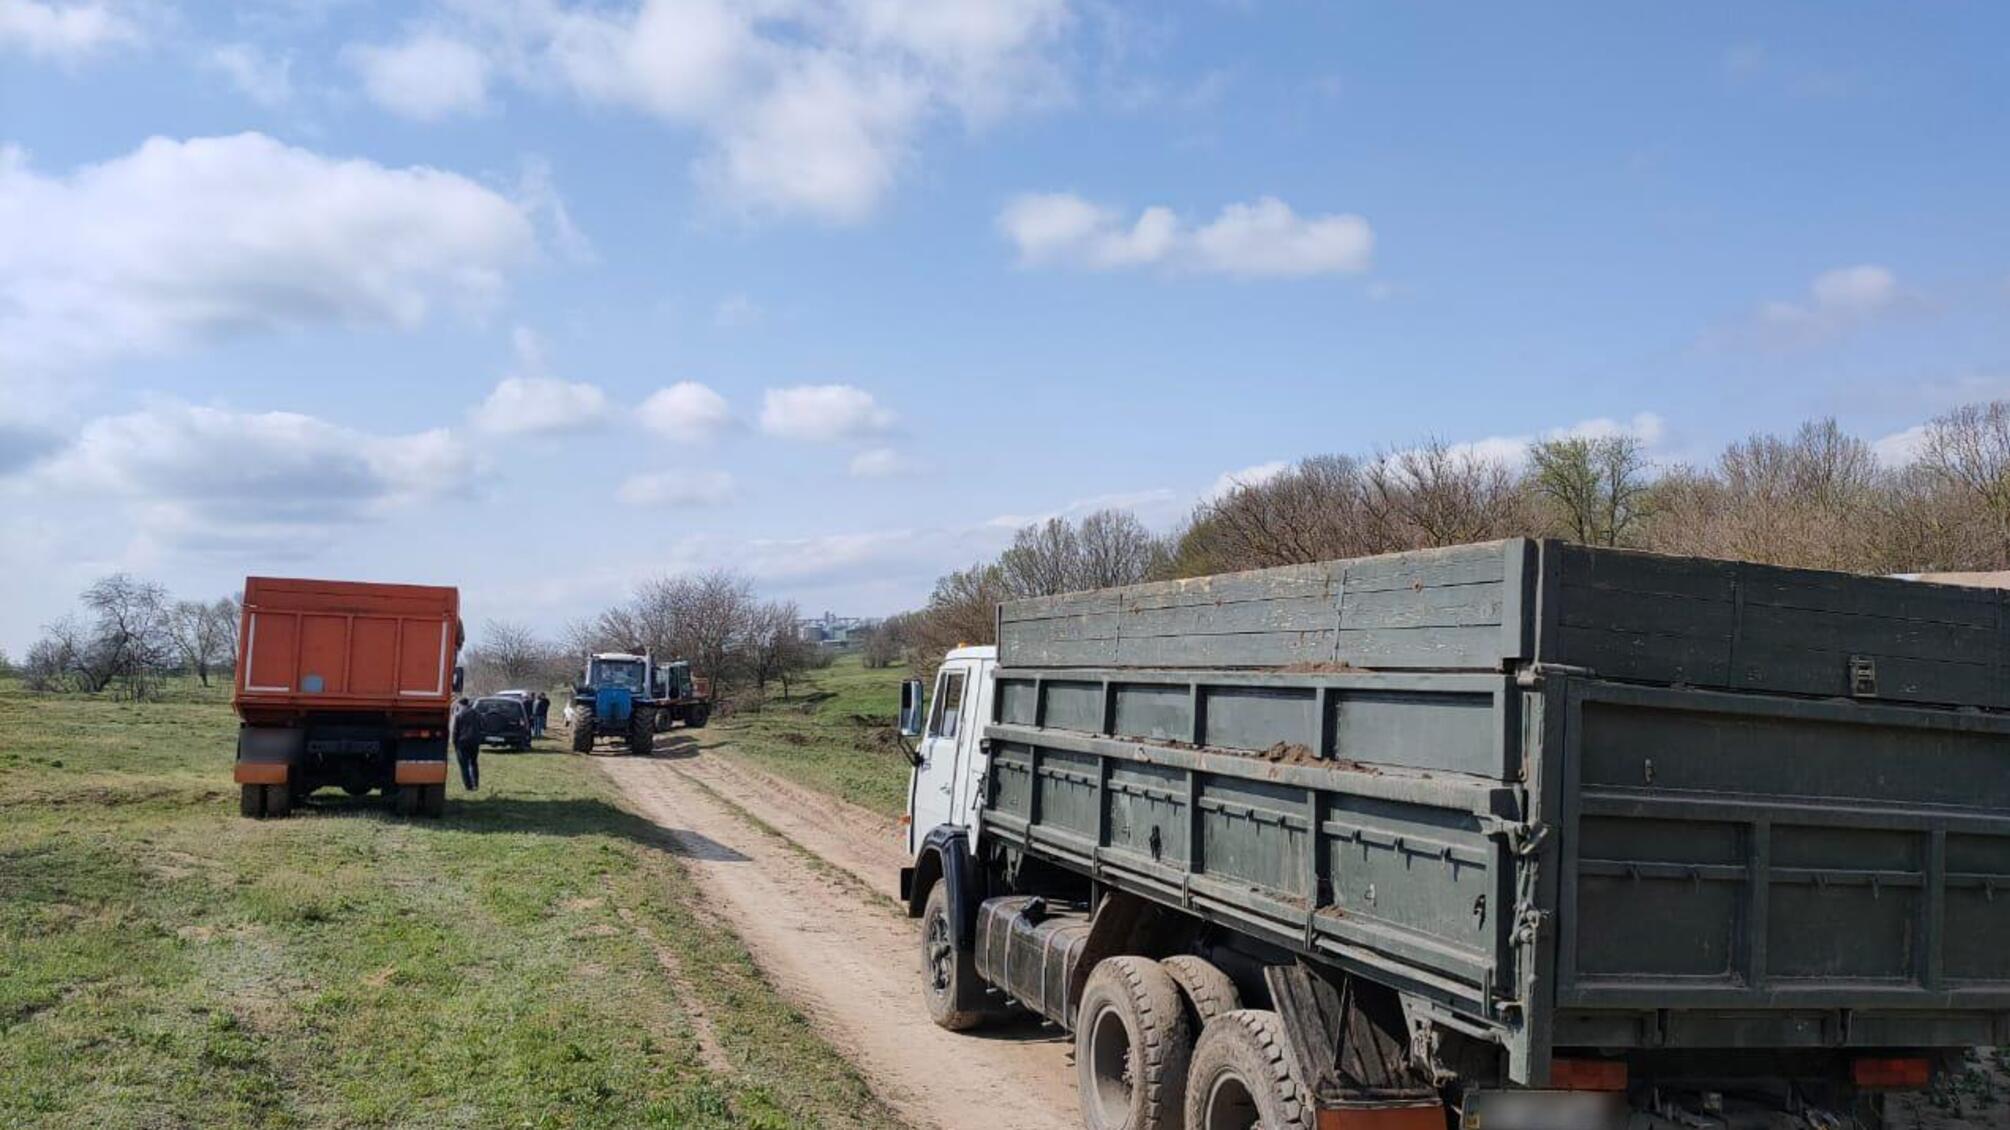 Правоохоронці Одещини запобігли незаконному заволодінню ґрунтовим покривом землі